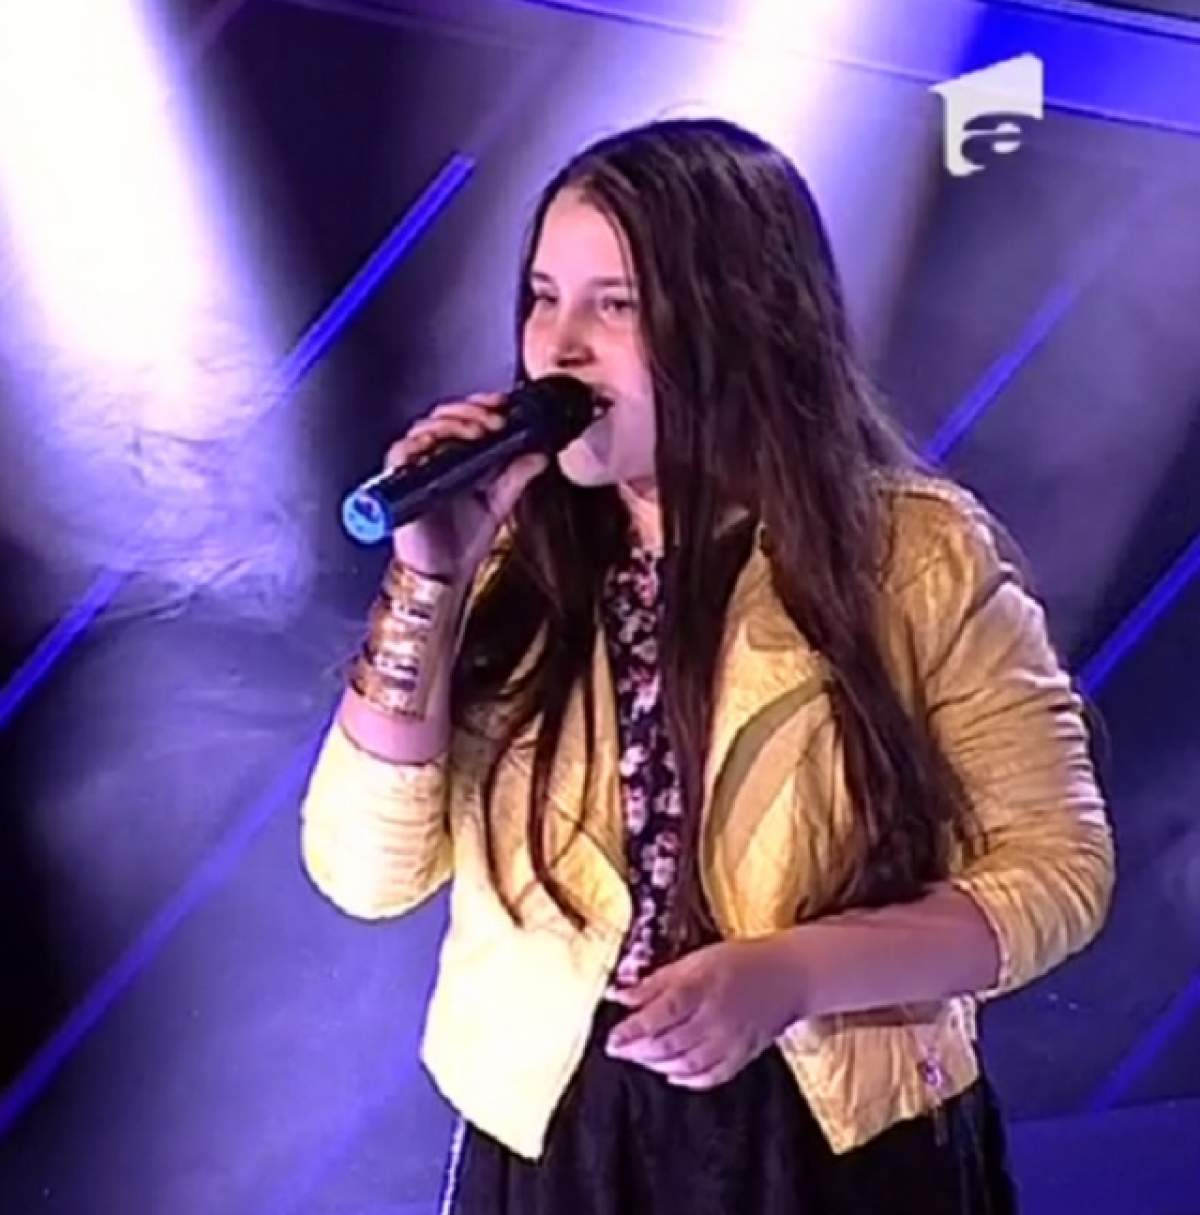 VIDEO / Iulia Blaj, o artistă desăvârșită la NOUĂ ani! A cântat MAGISTRAL, iar juriul de la "Next Star" a fost cucerit